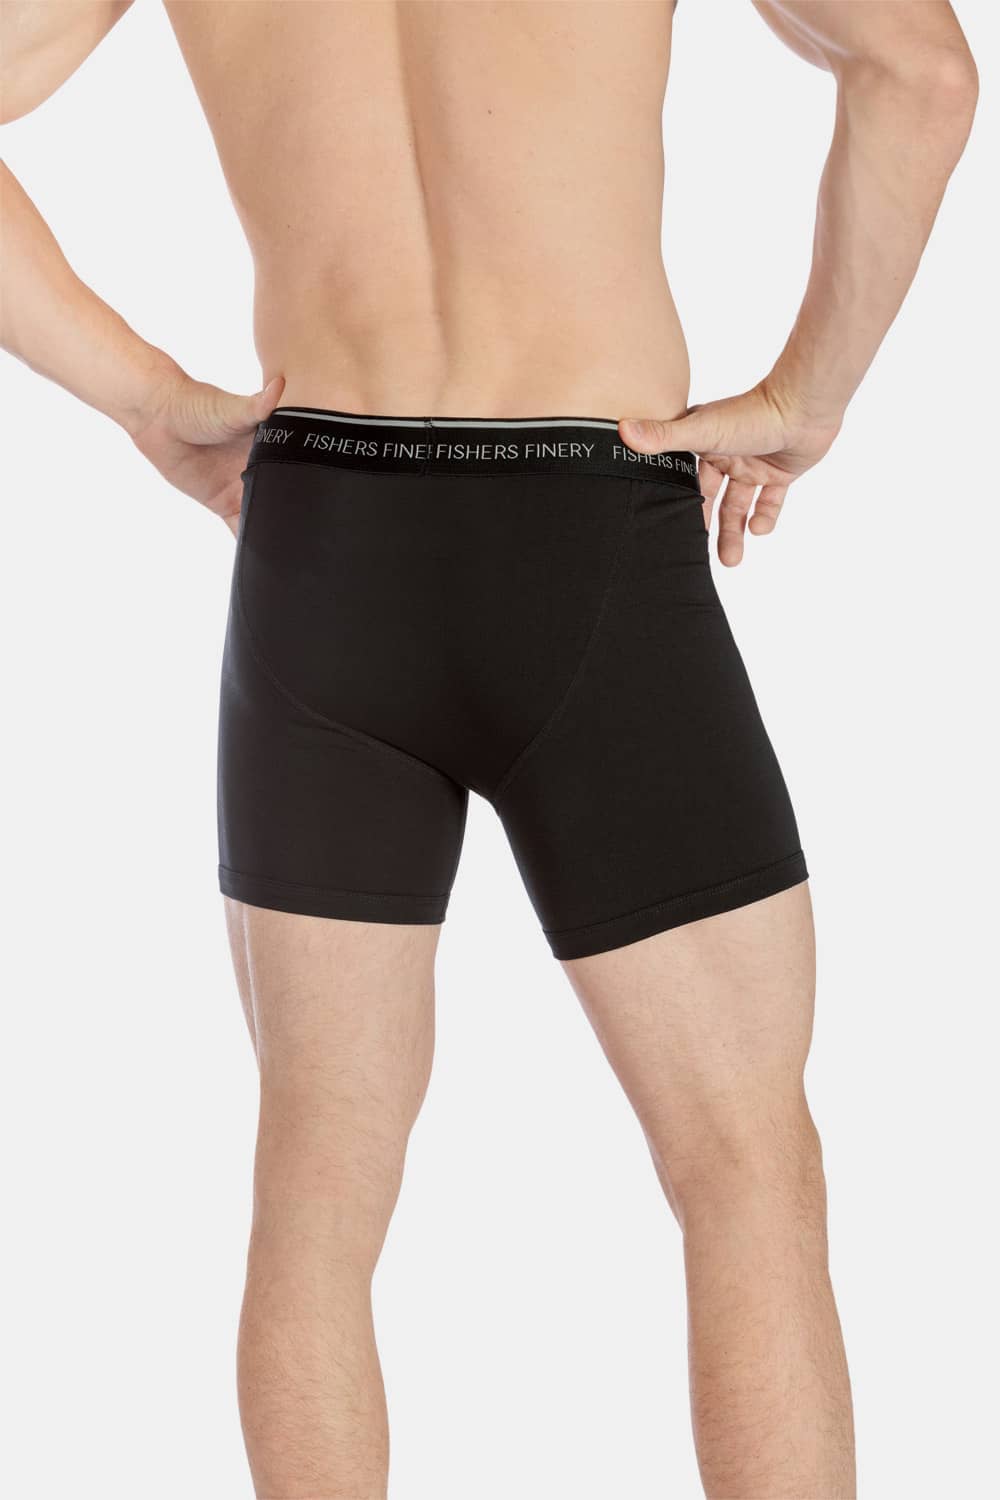 Men's Underwear Briefs